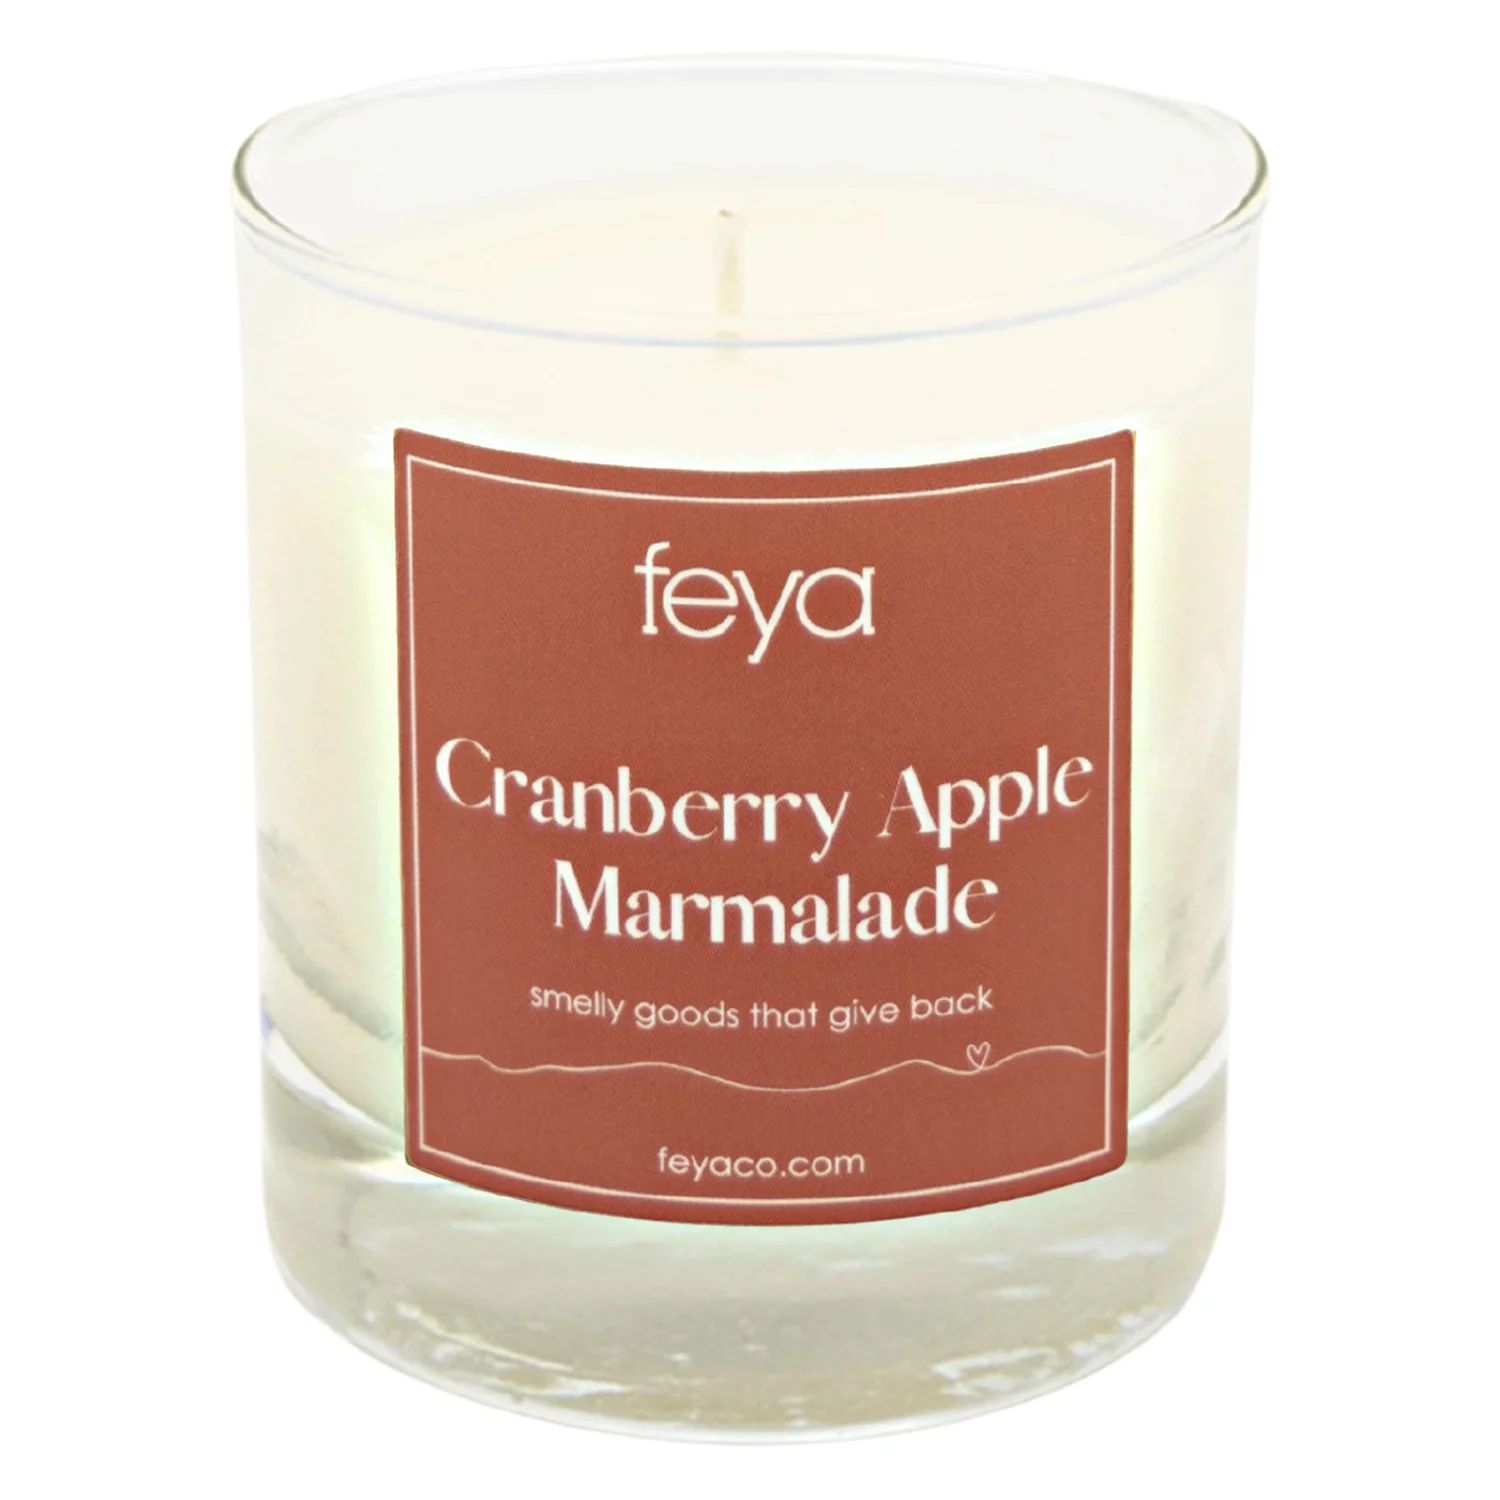 Feya Candle Клюквенно-яблочный мармелад, 6,5 унций. Соевая свеча feya candle co французская ваниль и амбра 6 5 унций соевая свеча